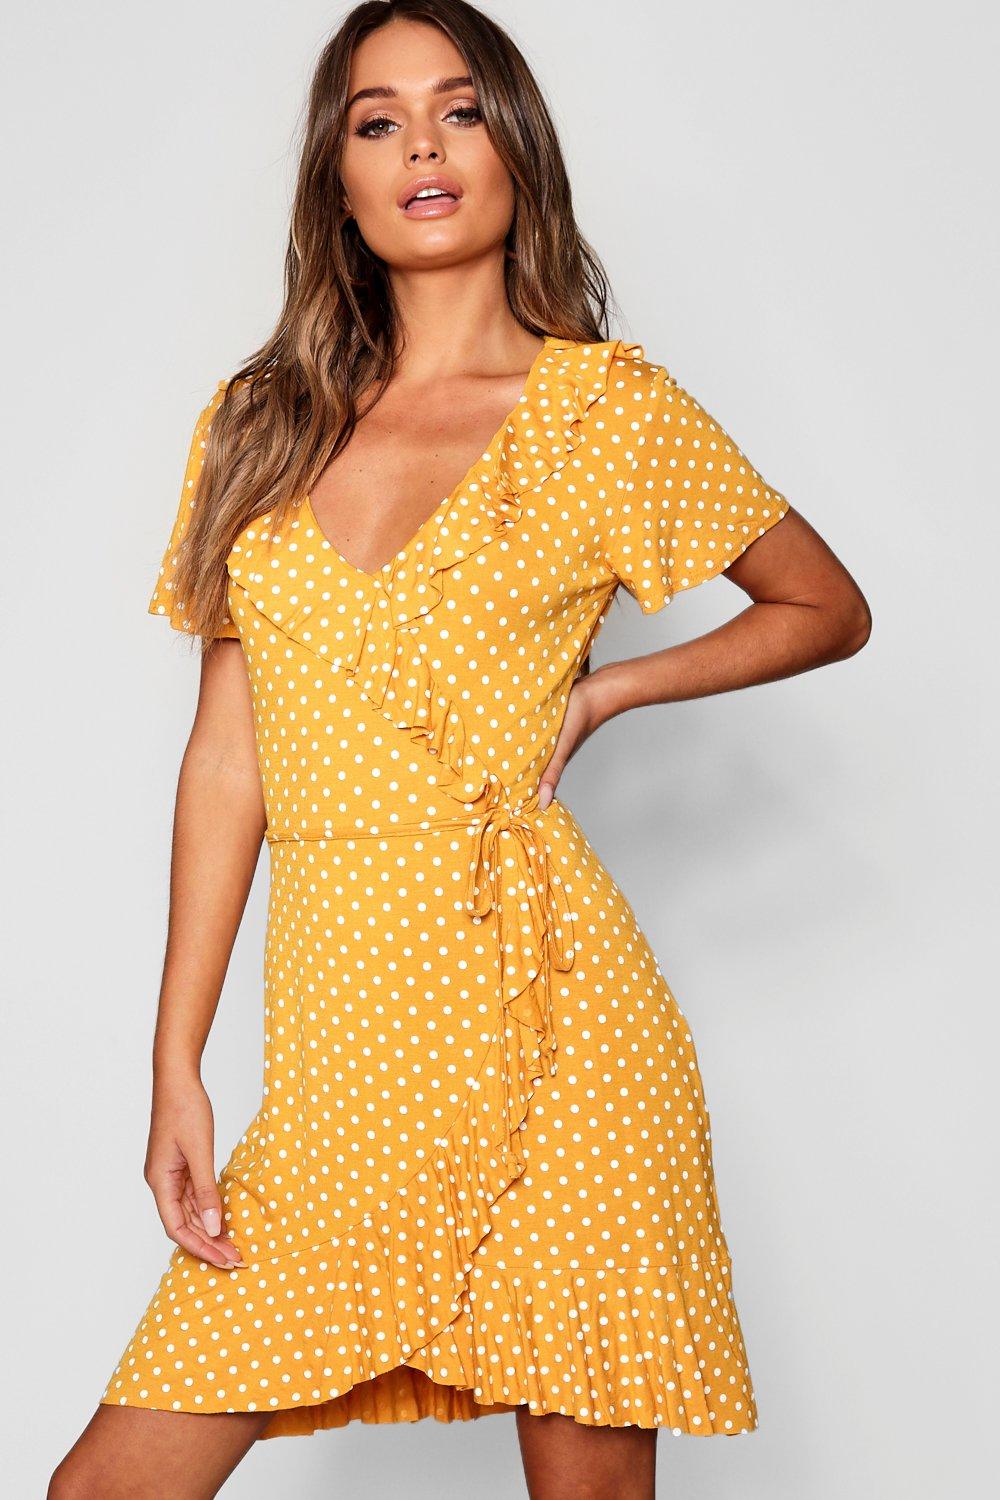 Yellow Polka Dot Wrap Dress Flash Sales ...